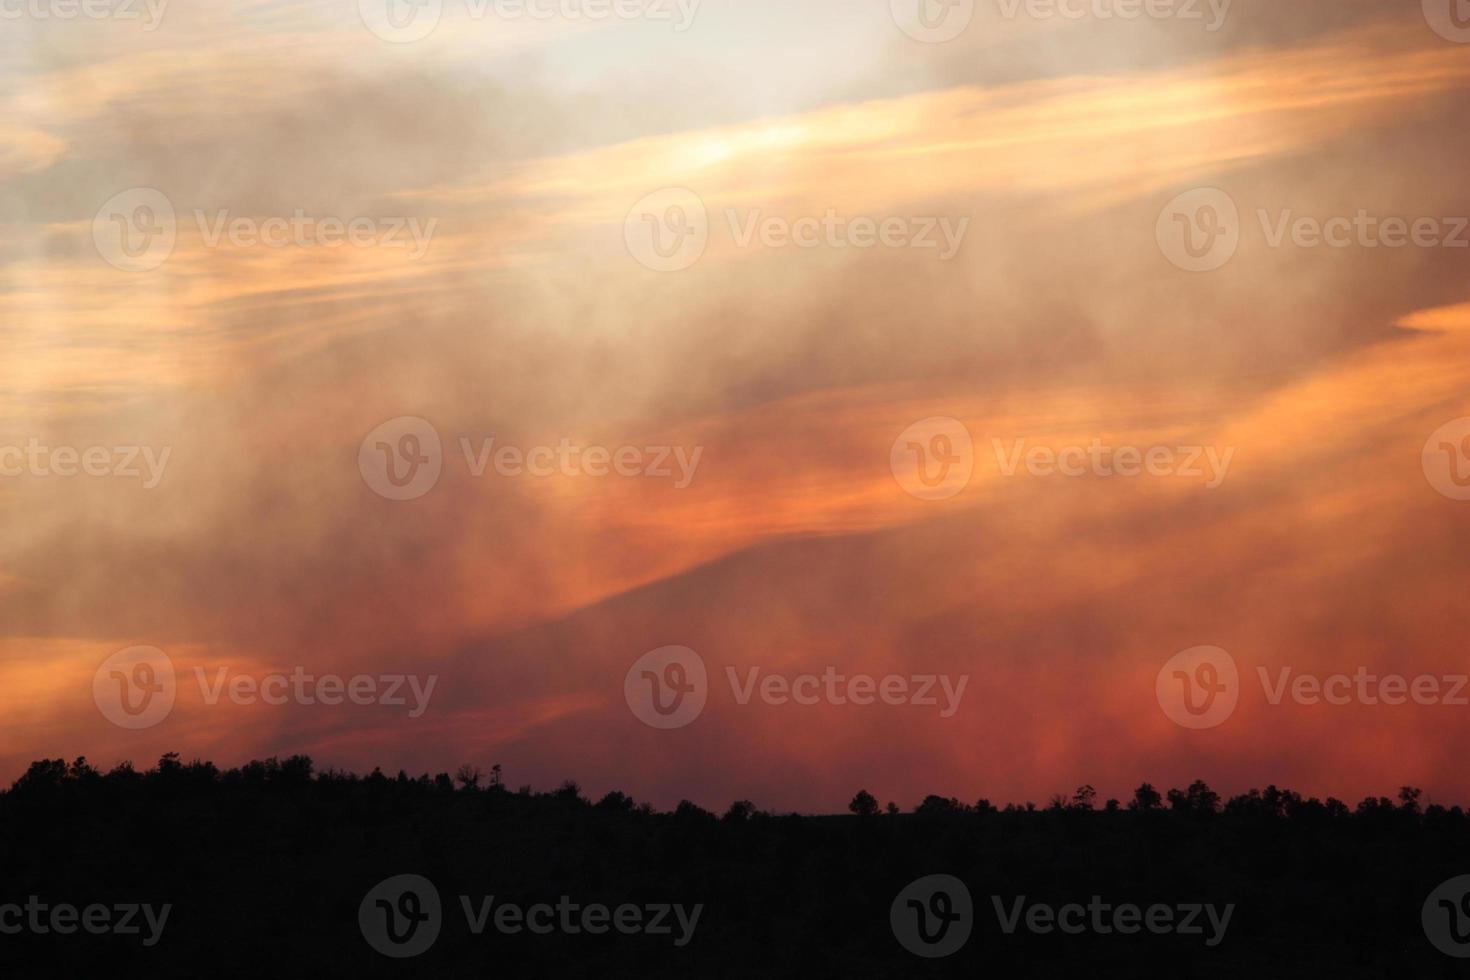 Capas translúcidas de humo y nubes en el cielo al atardecer durante un incendio forestal foto